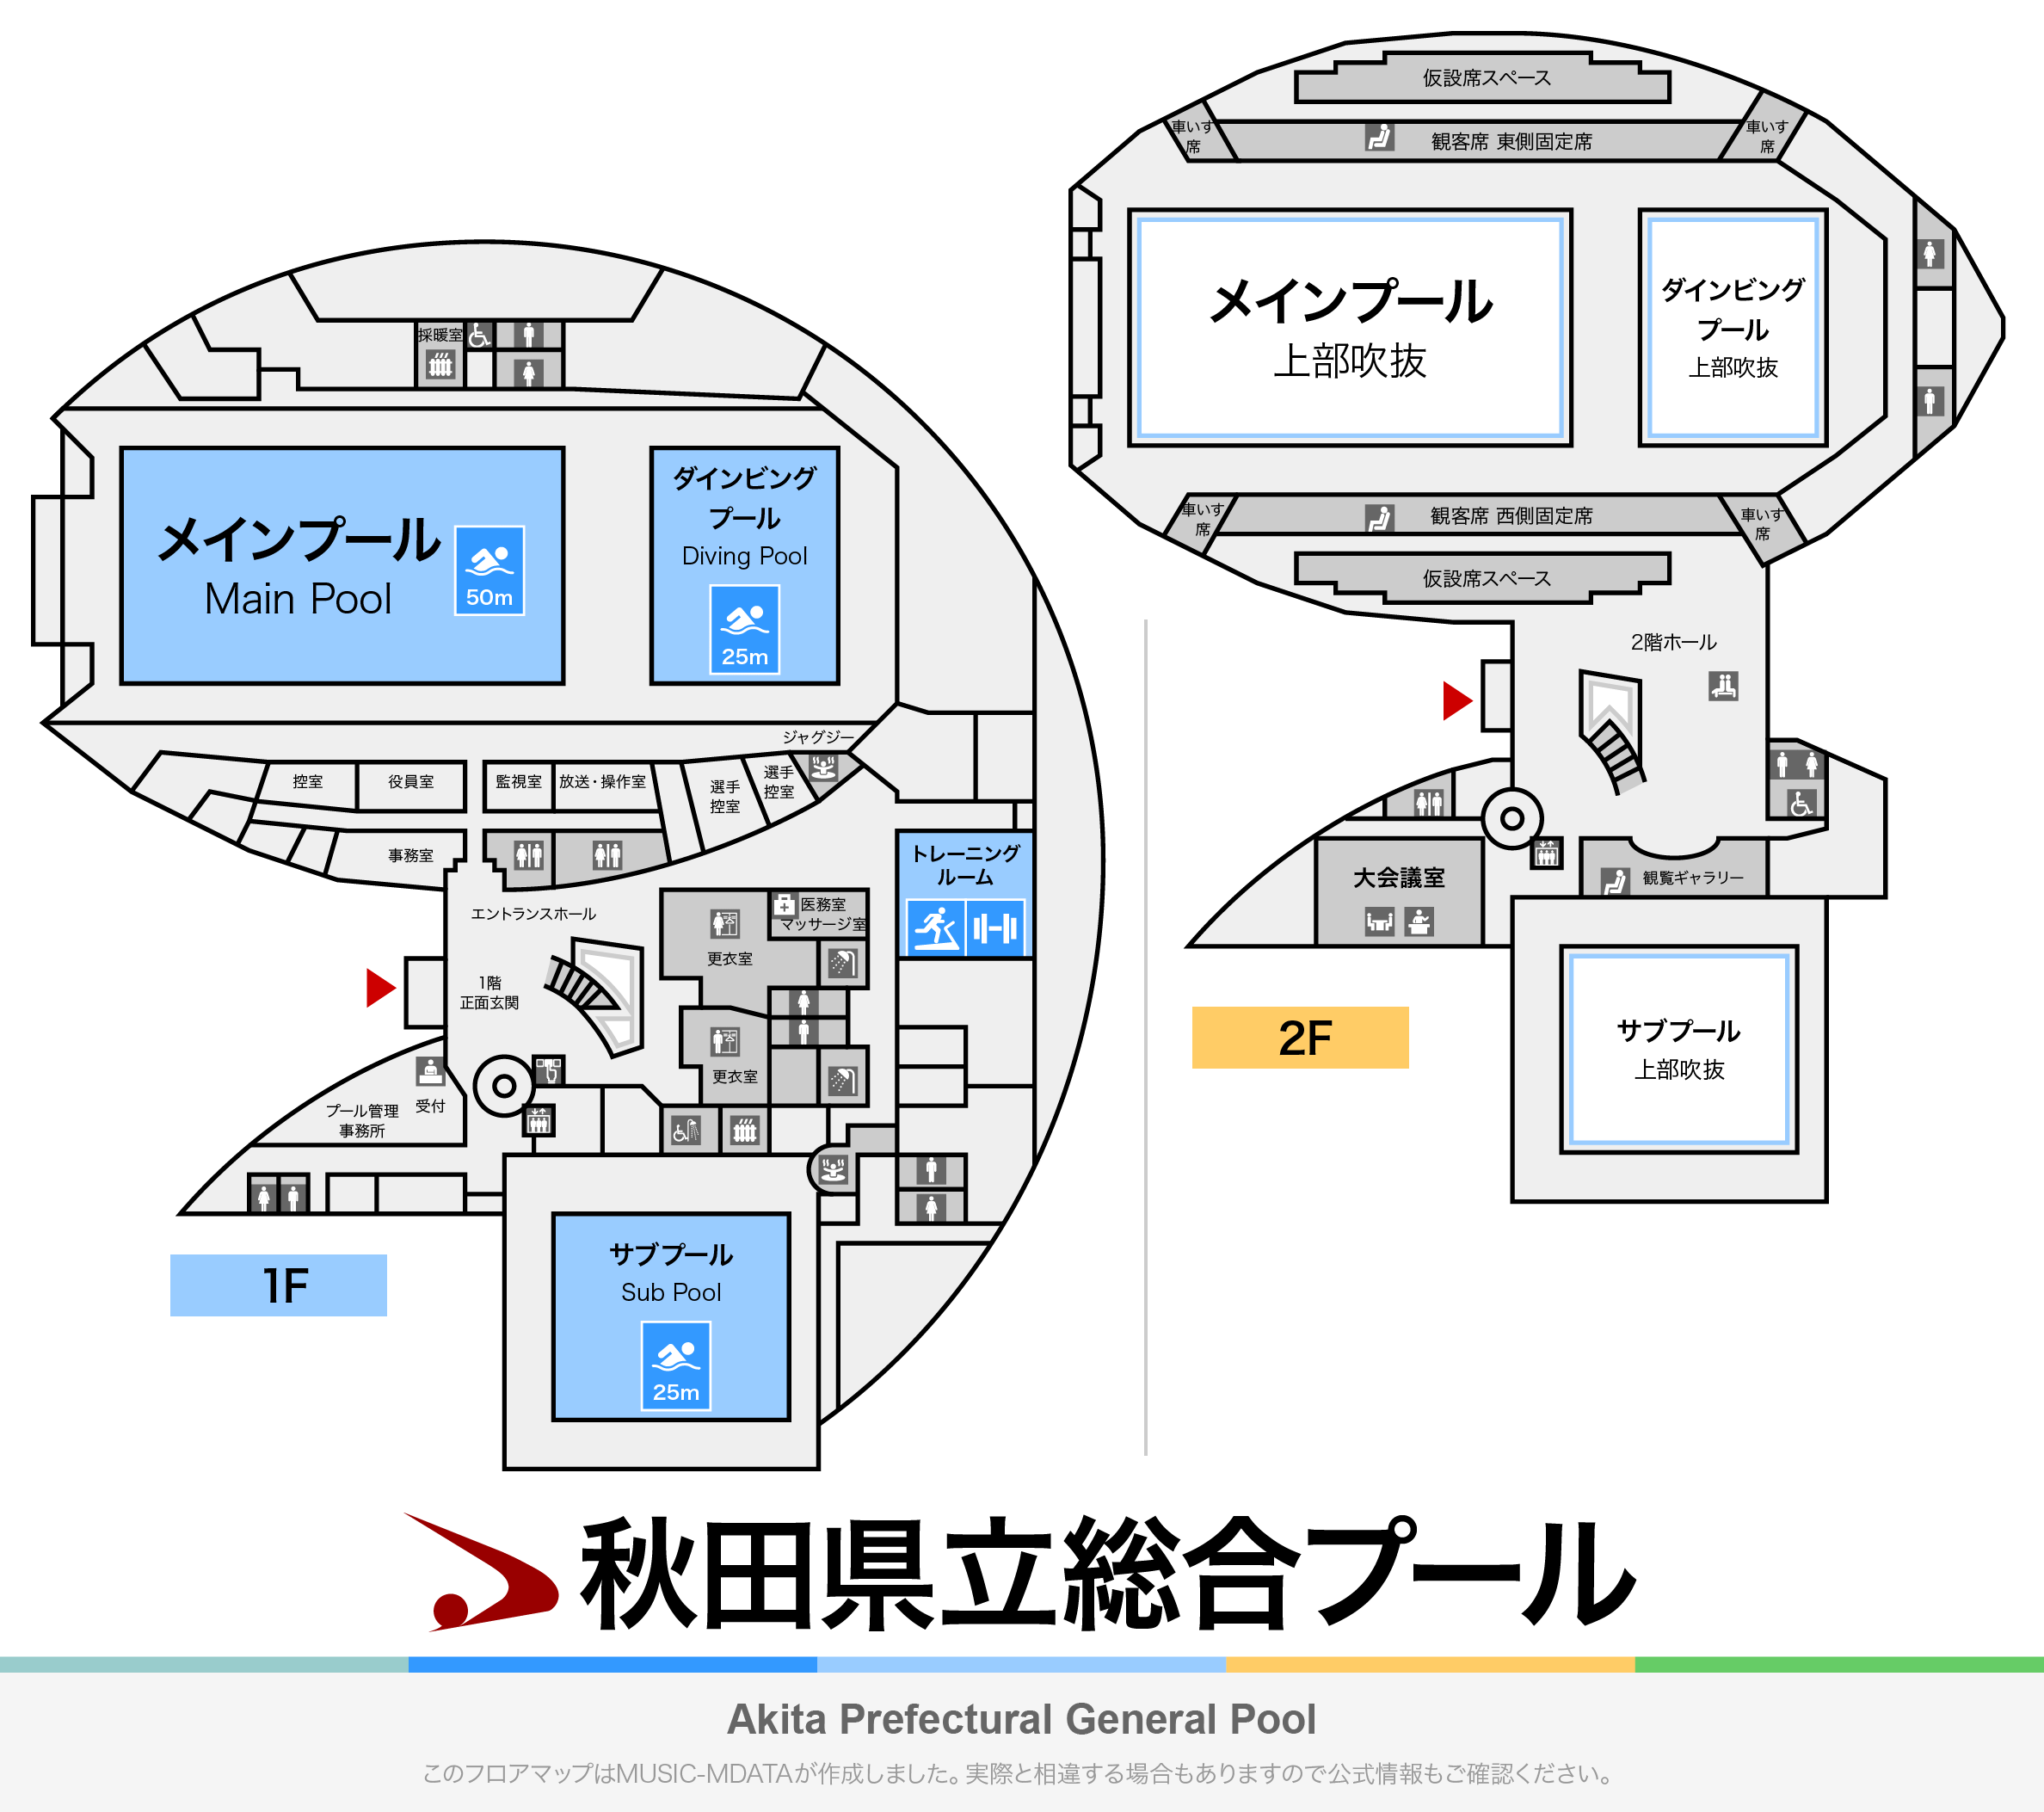 秋田県立総合プールのフロアマップ・体育館